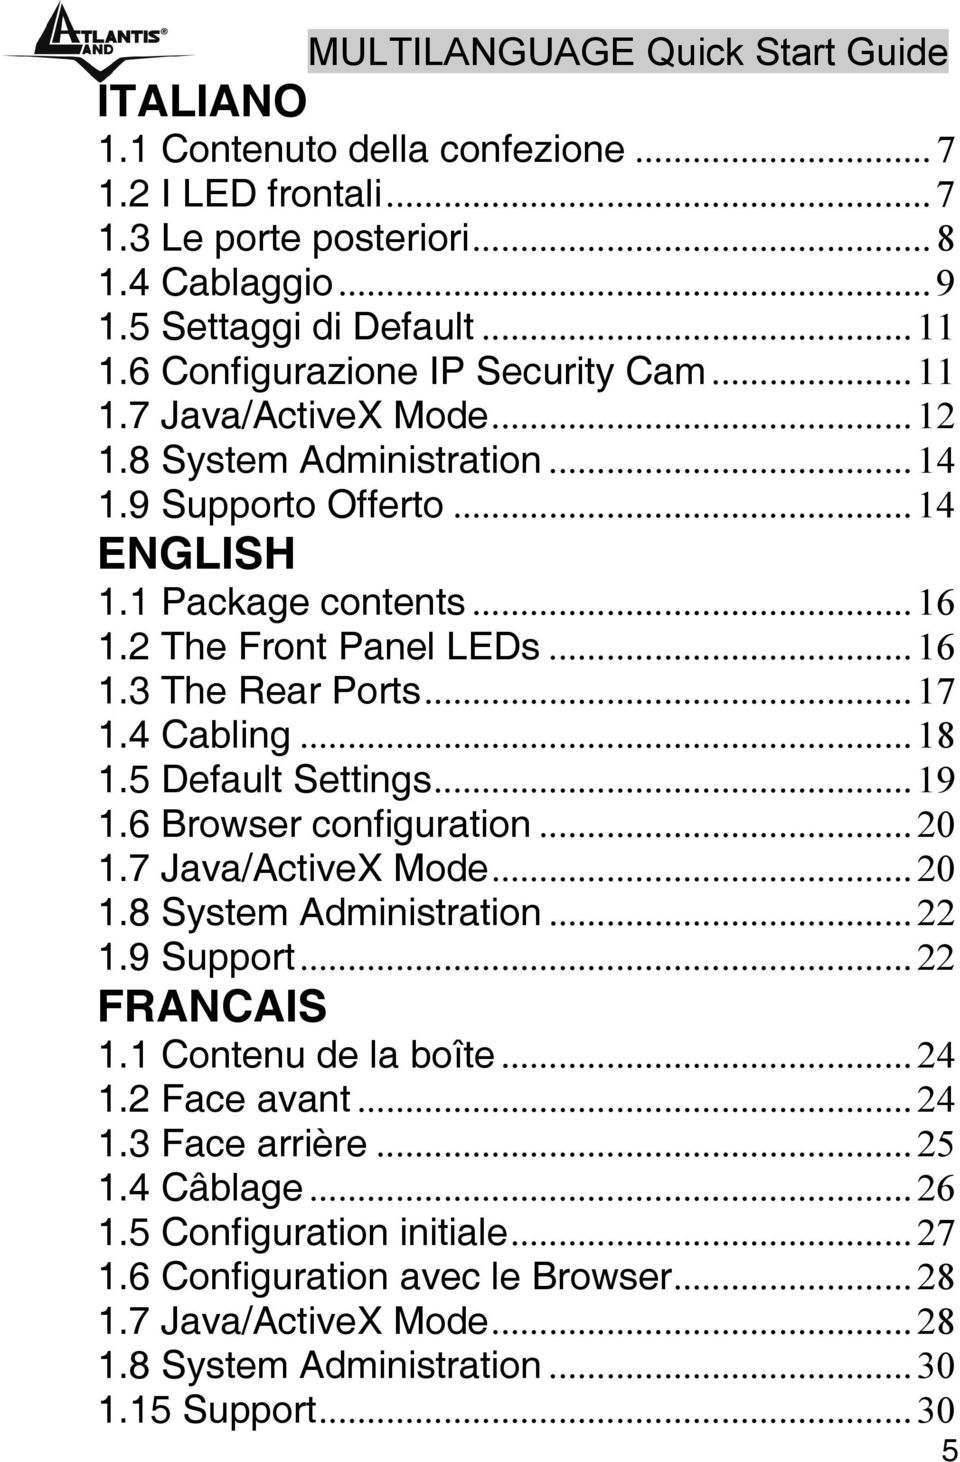 ..17 1.4 Cabling...18 1.5 Default Settings...19 1.6 Browser configuration...20 1.7 Java/ActiveX Mode...20 1.8 System Administration...22 1.9 Support...22 FRANCAIS 1.1 Contenu de la boîte...24 1.